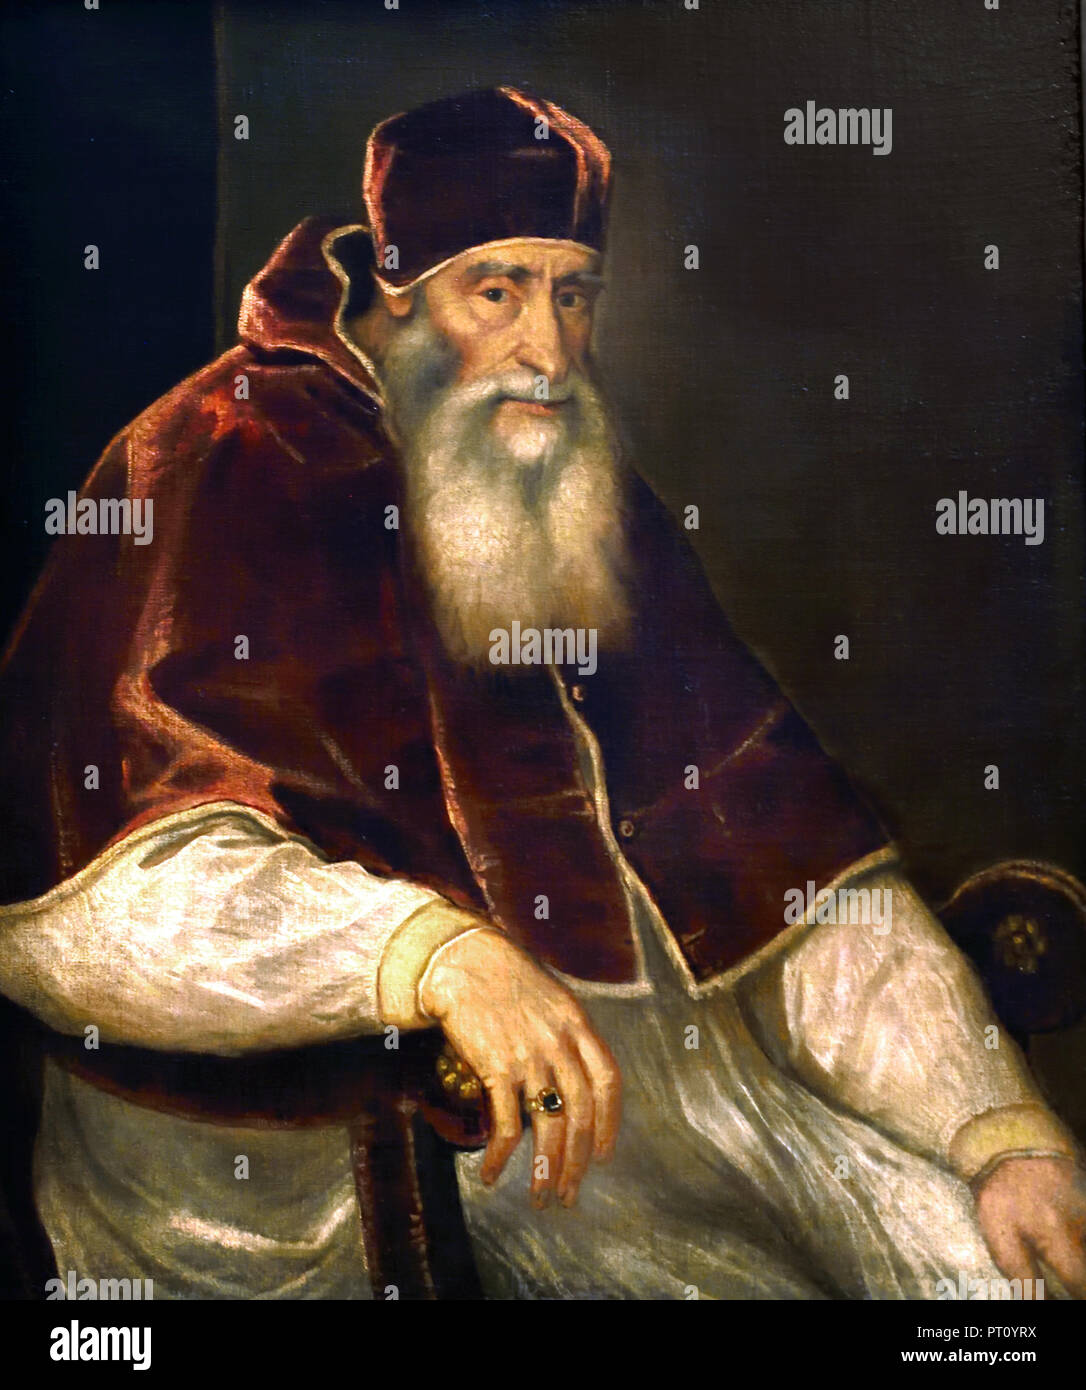 Pope Paul III. Farnese (1468-1549) by Tiziano Vecellio, called Titian 1488 Pieve di Cadore - 1576 Venice) Italy Italian . Stock Photo